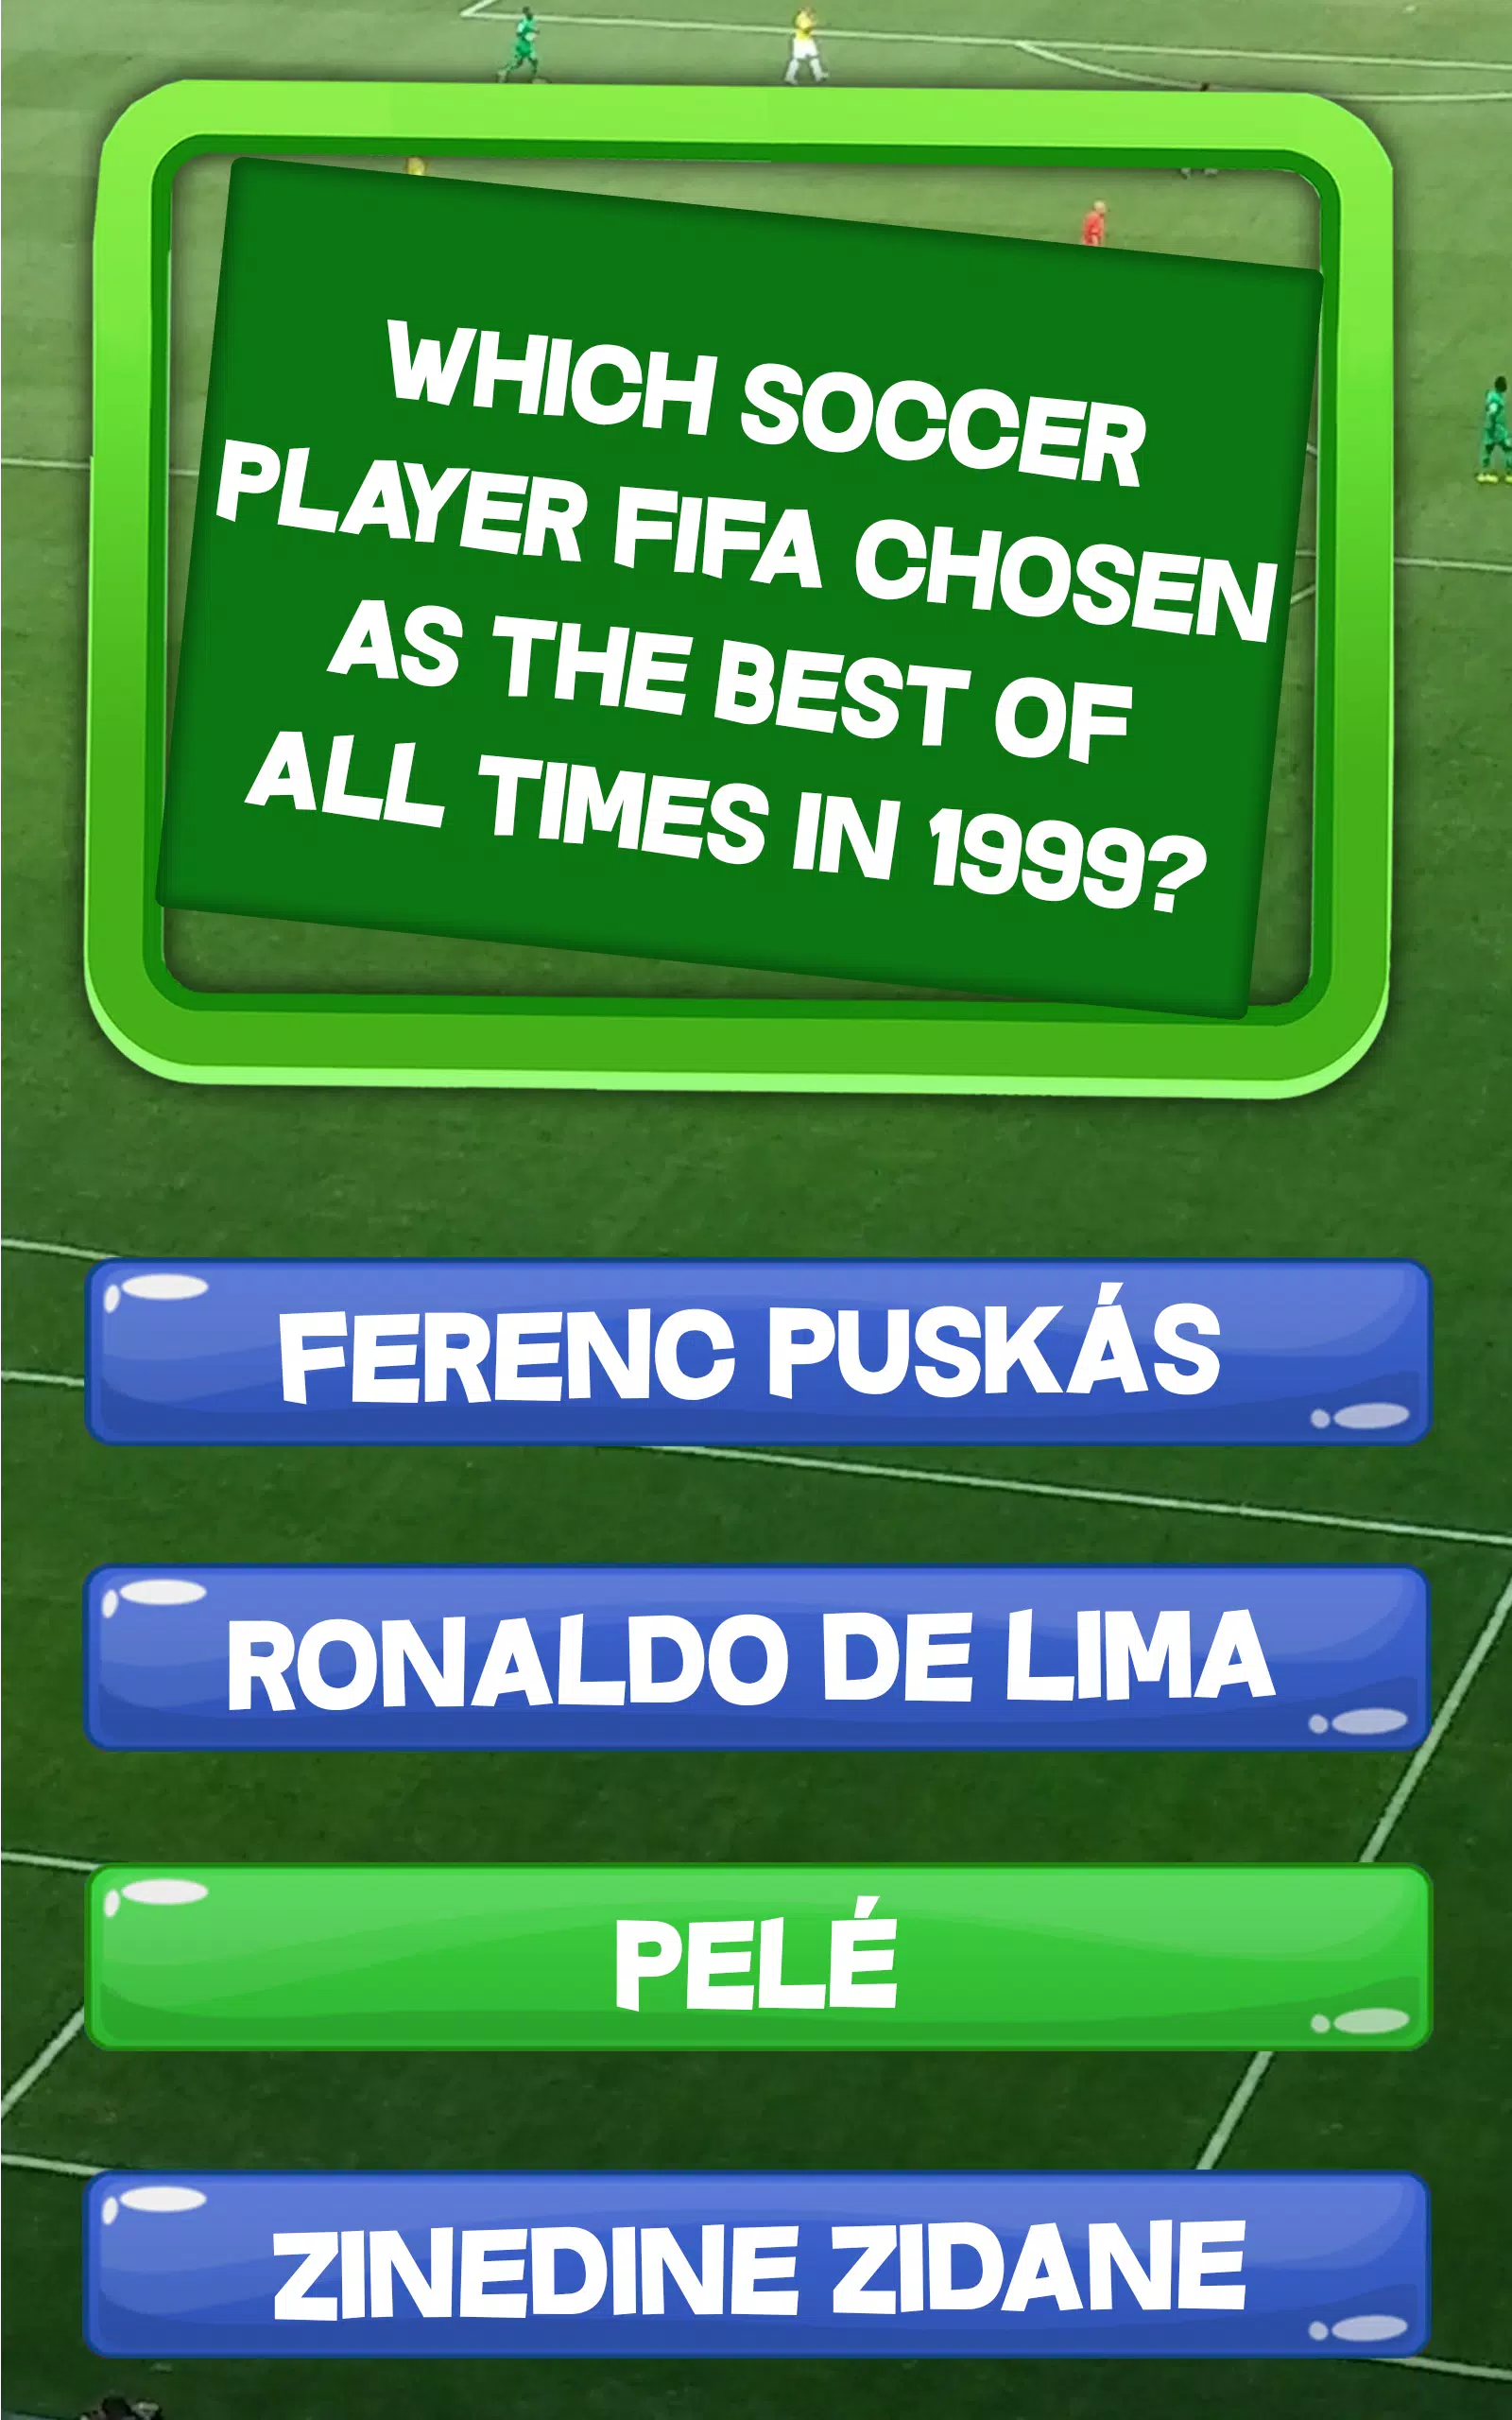 Quiz de Futebol - Brasileirão - Apps on Google Play